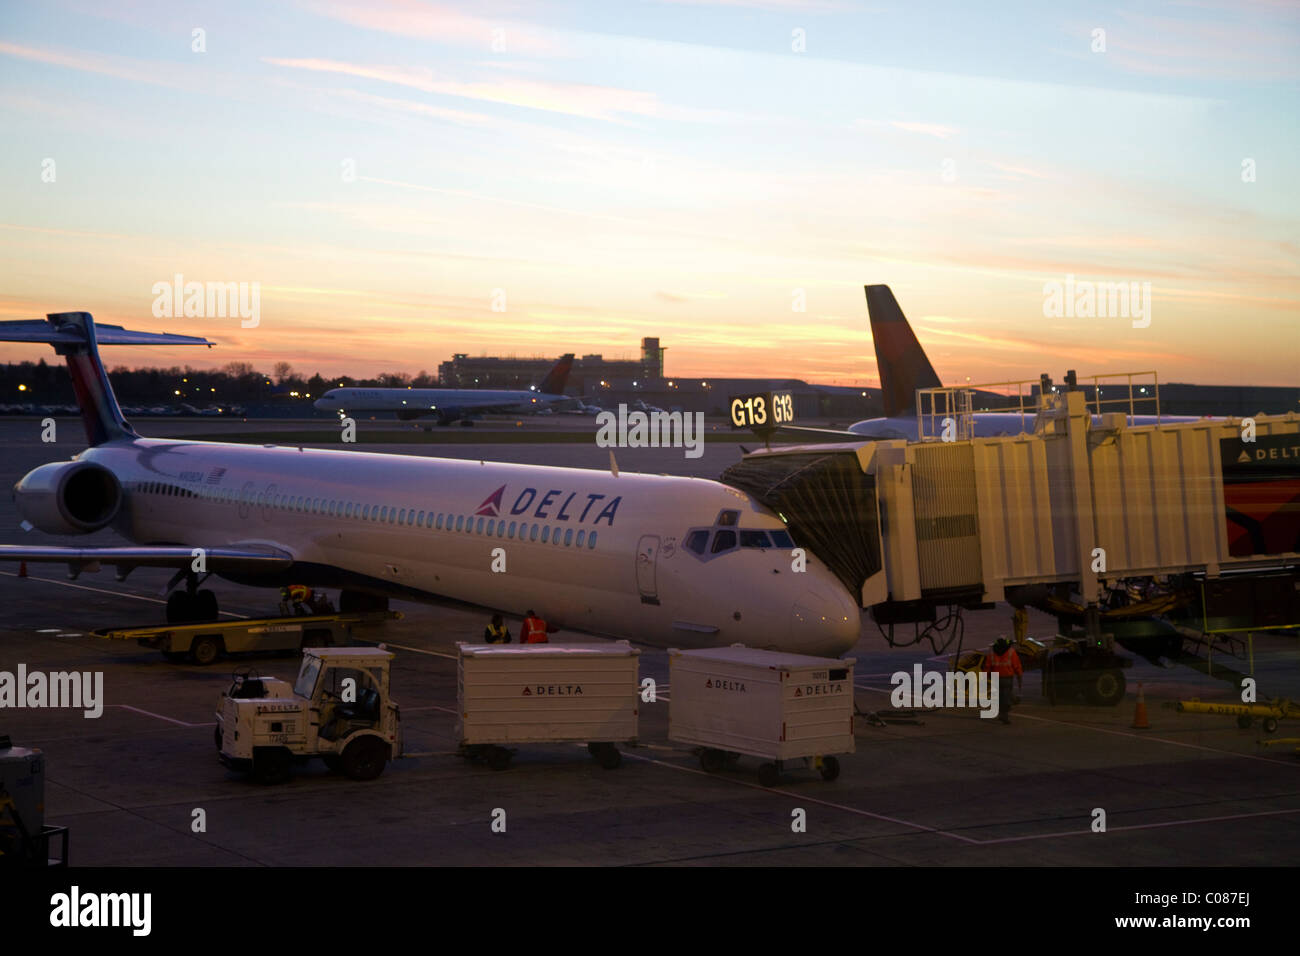 Avion de Delta au cours de coucher du soleil à l'aéroport international de Minneapolis-Saint Paul situé à Fort Snelling, Minnesota, USA. Banque D'Images